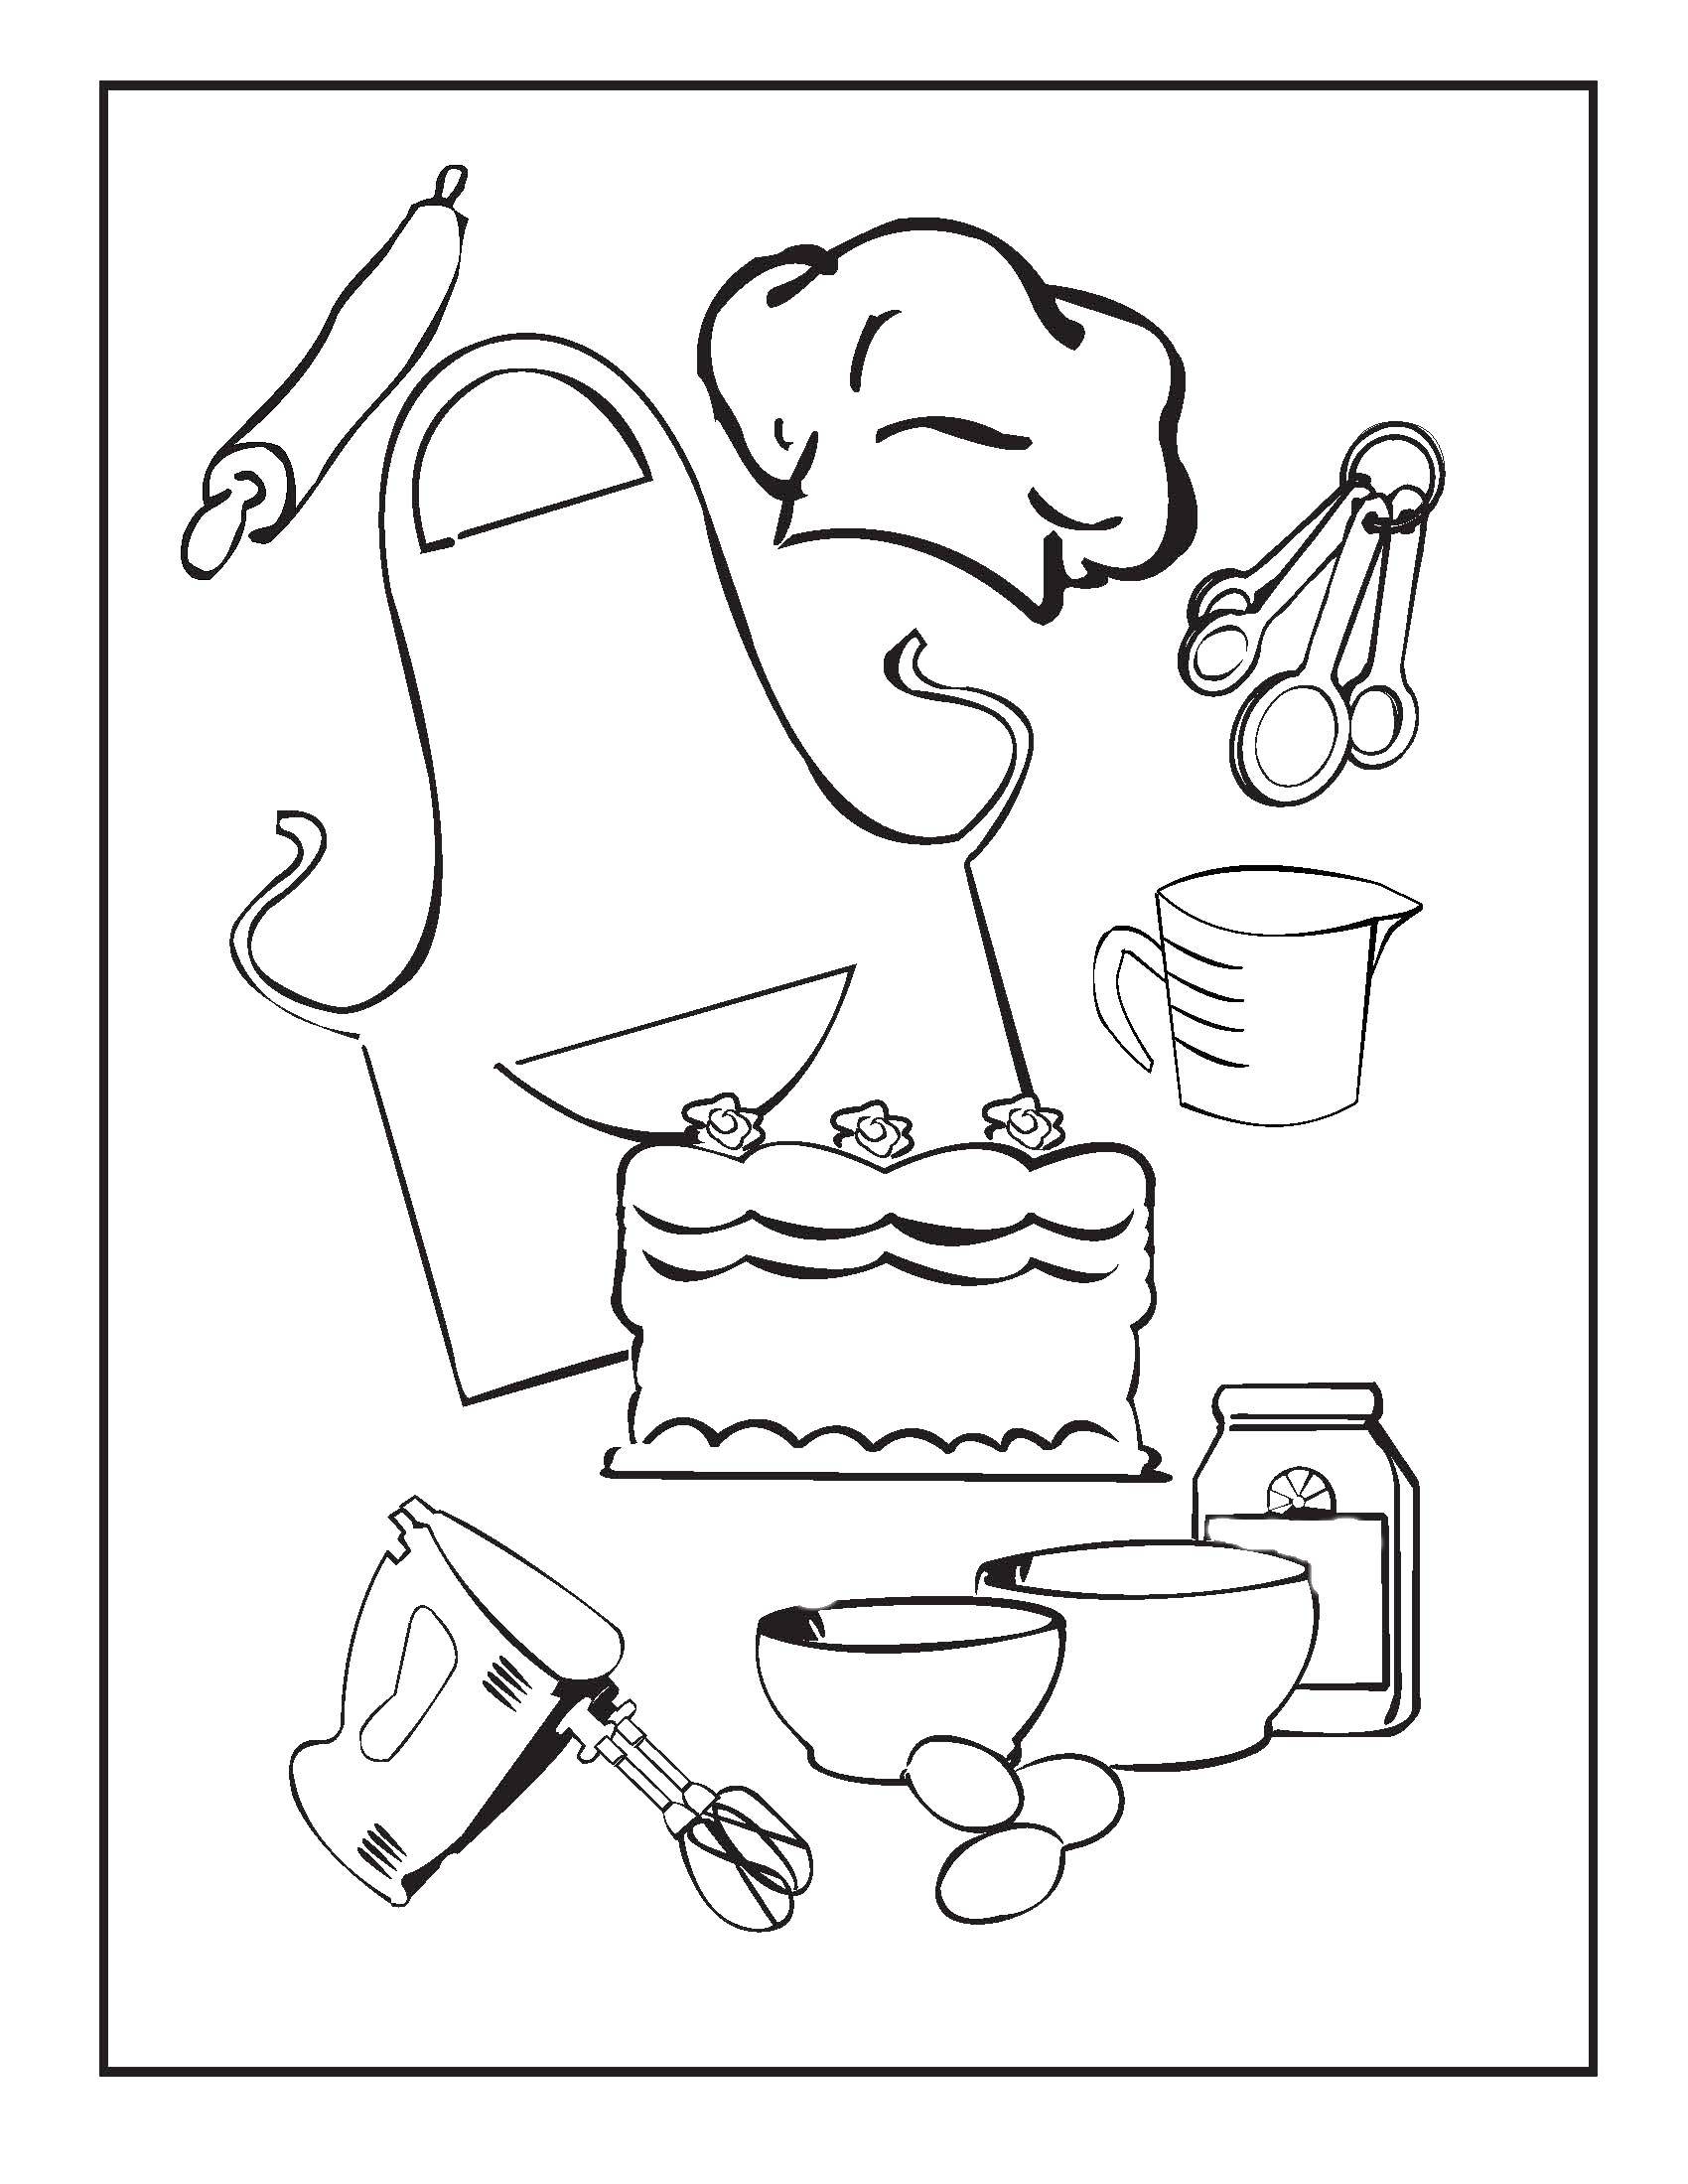 Опис: розмальовки  Кулінарні приналежності. Категорія: Готуємо їжу. Теги:  міксер, фартух, торт, ковпак.